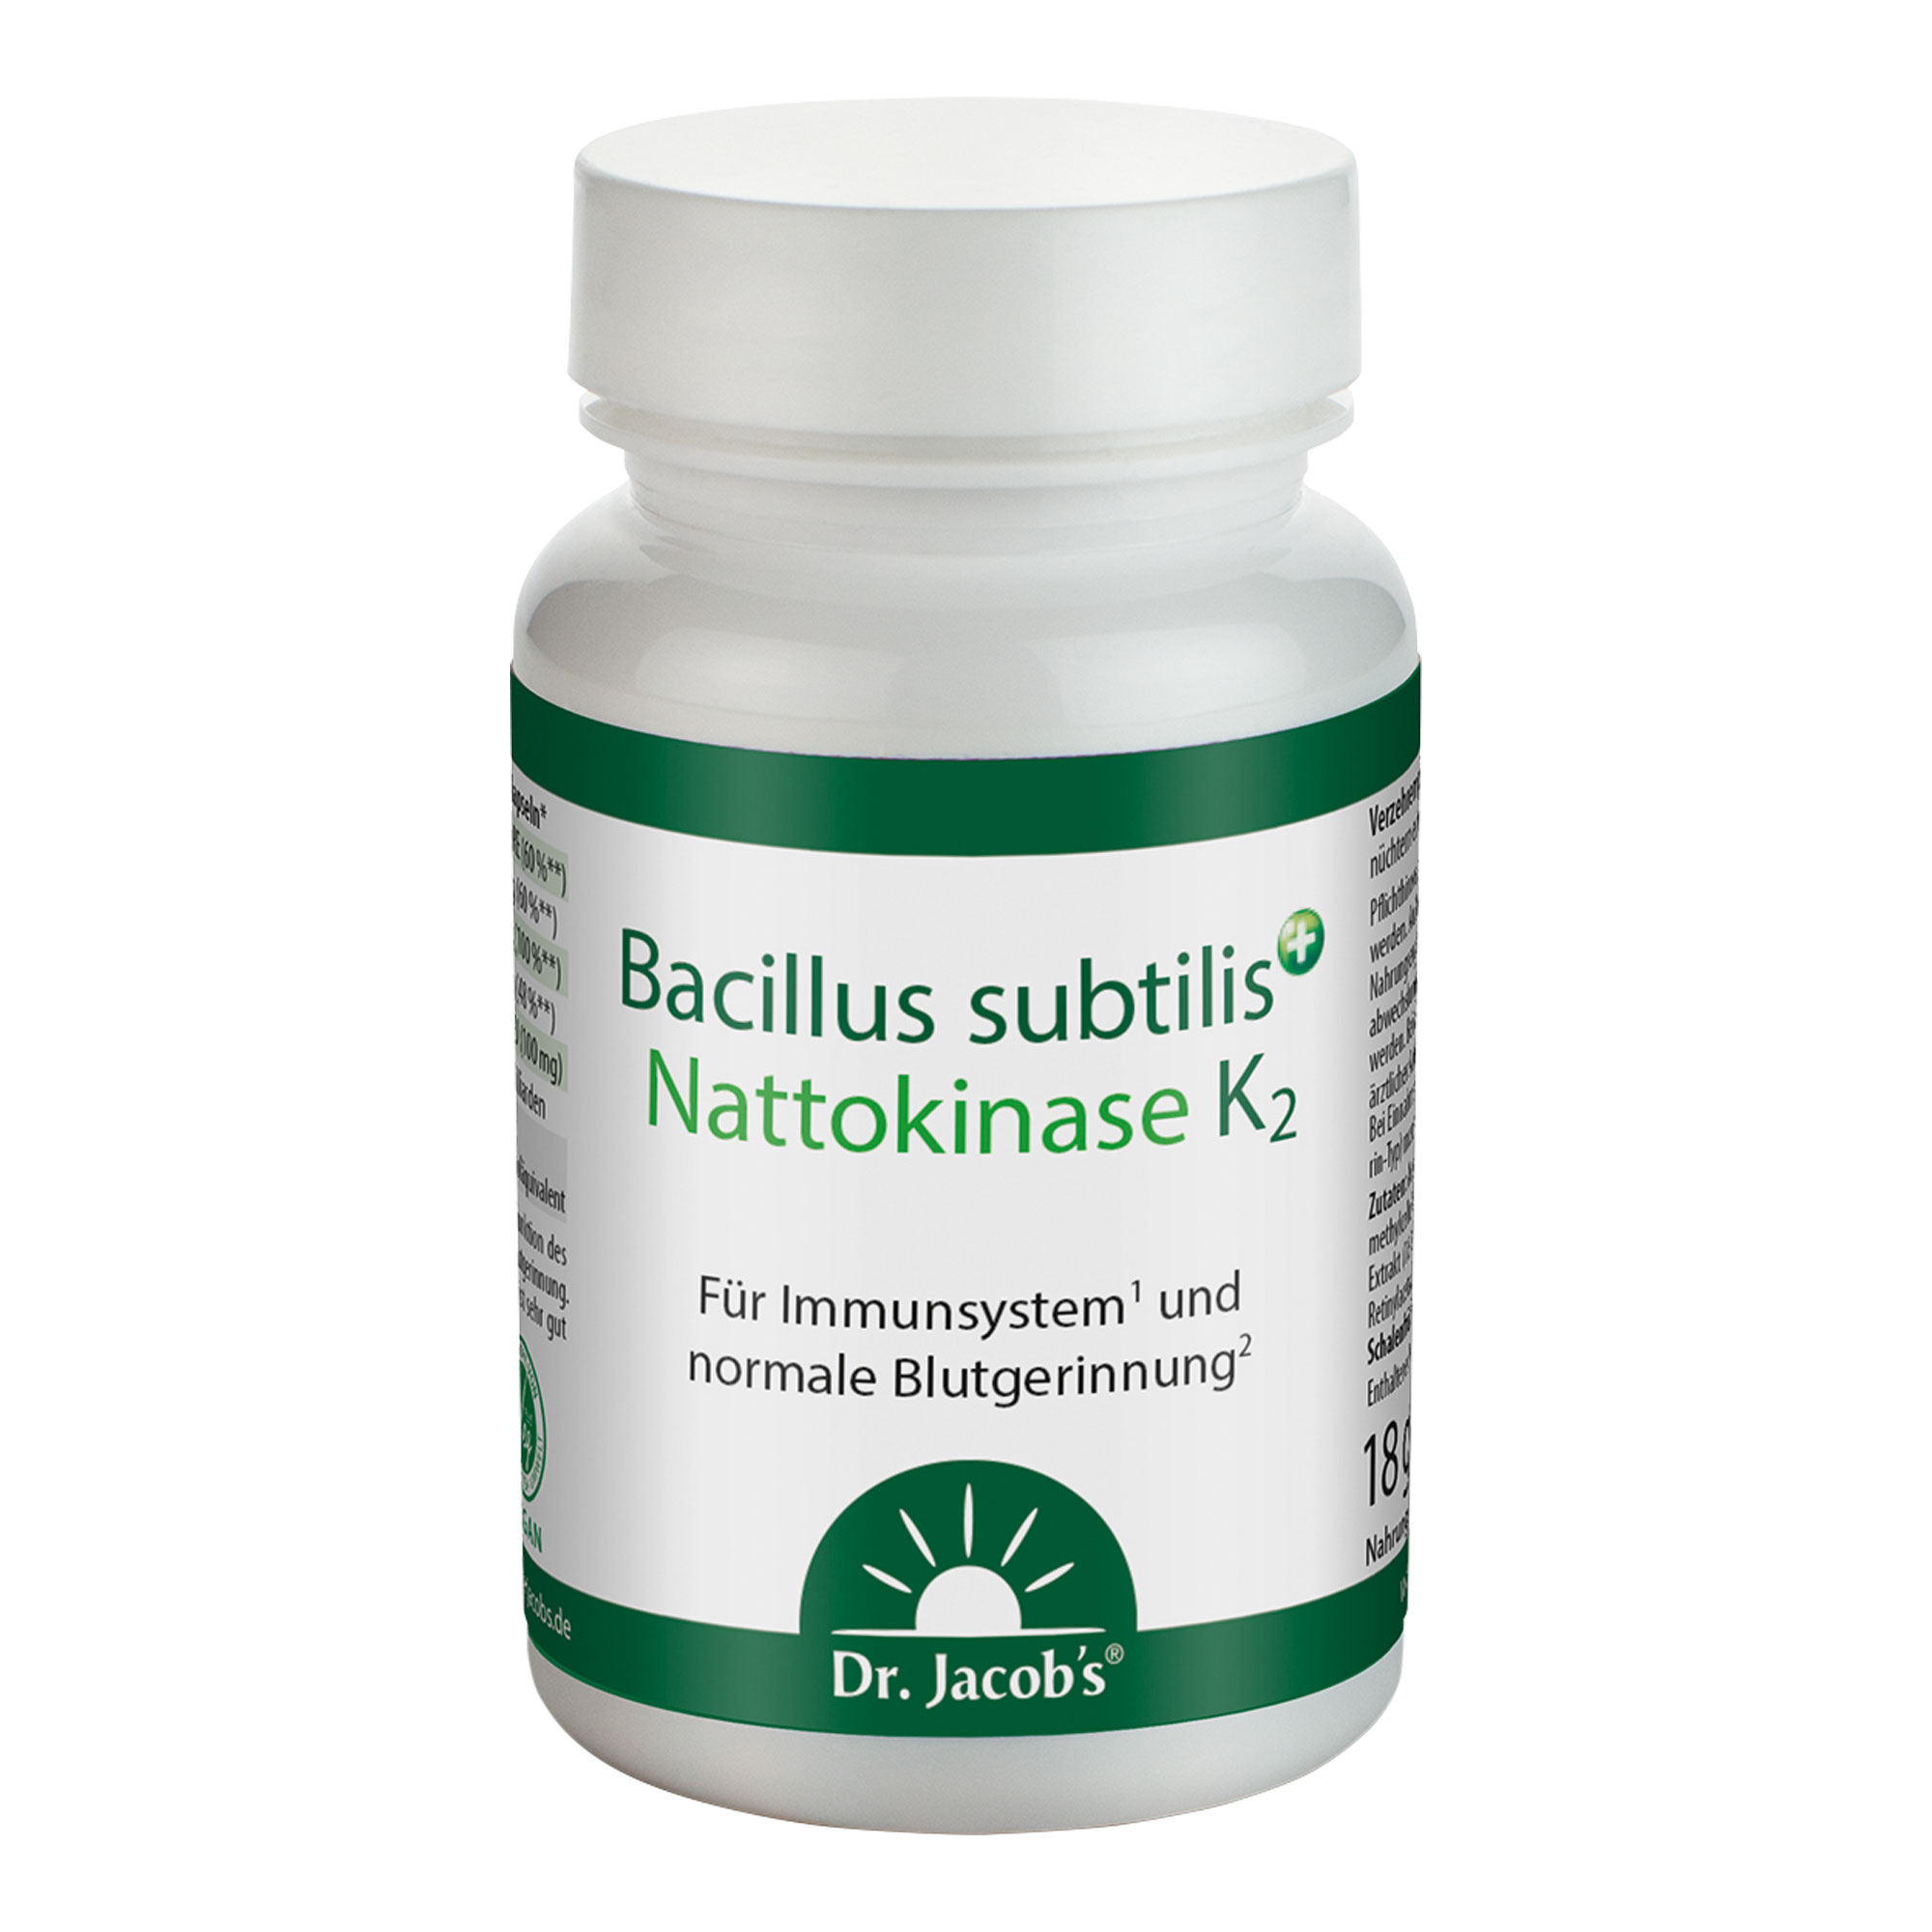 Nahrungsergänzungsmittel mit dem Bakterienstamm Bacillus subtilis CU1 und Nattokinase mit hoher Enzymaktivität.